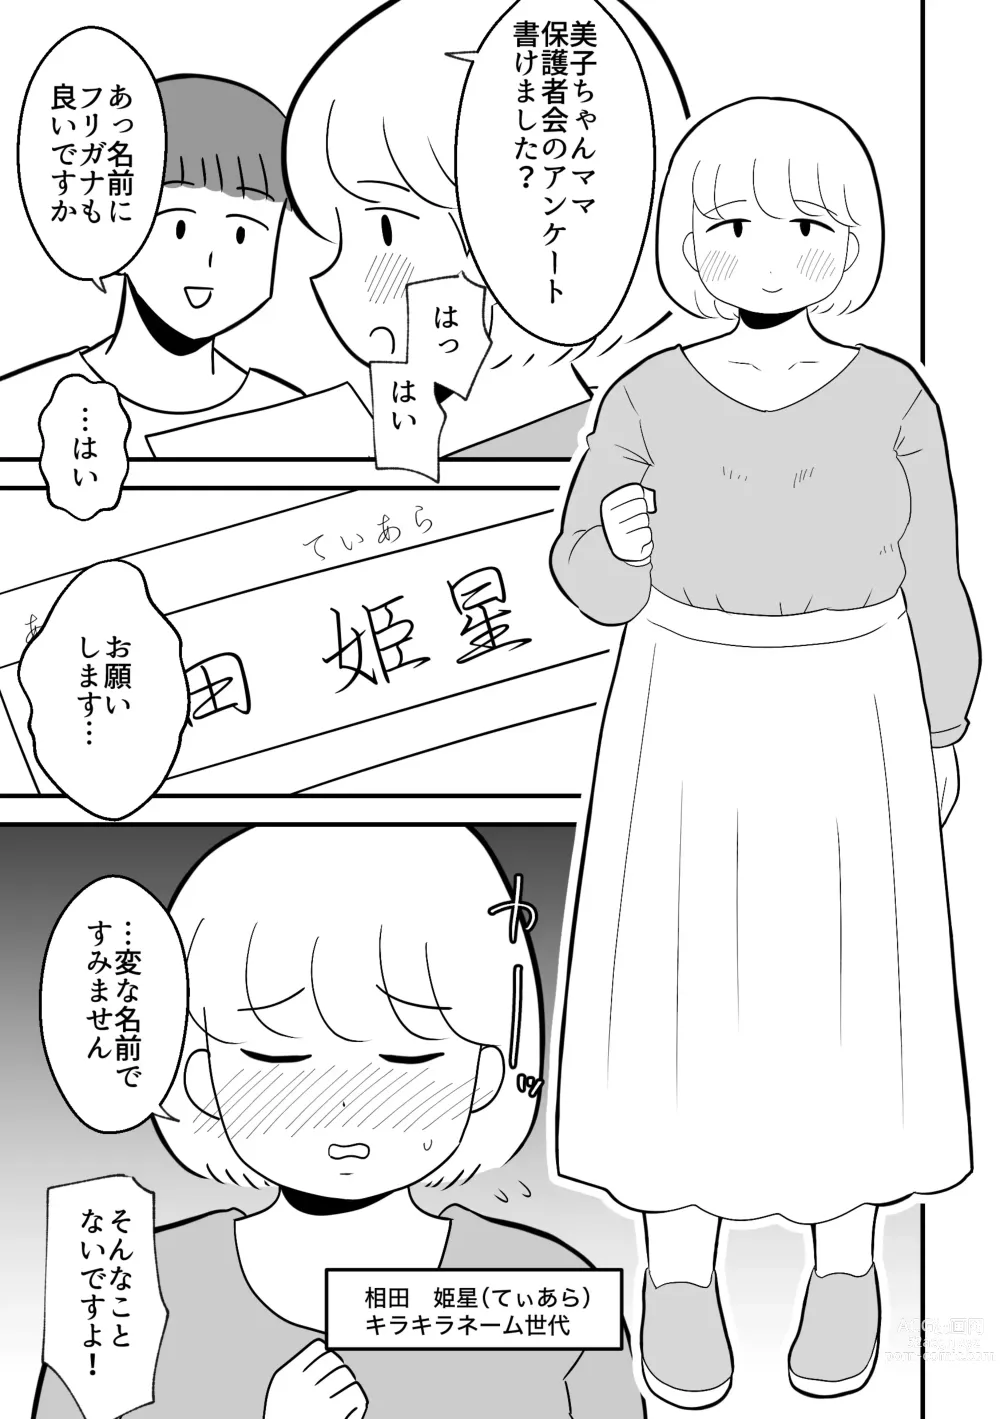 Page 5 of doujinshi Rin-chan Papa Sengyoushufu ga Mamatomo Zenin Kutte mita Sono 2